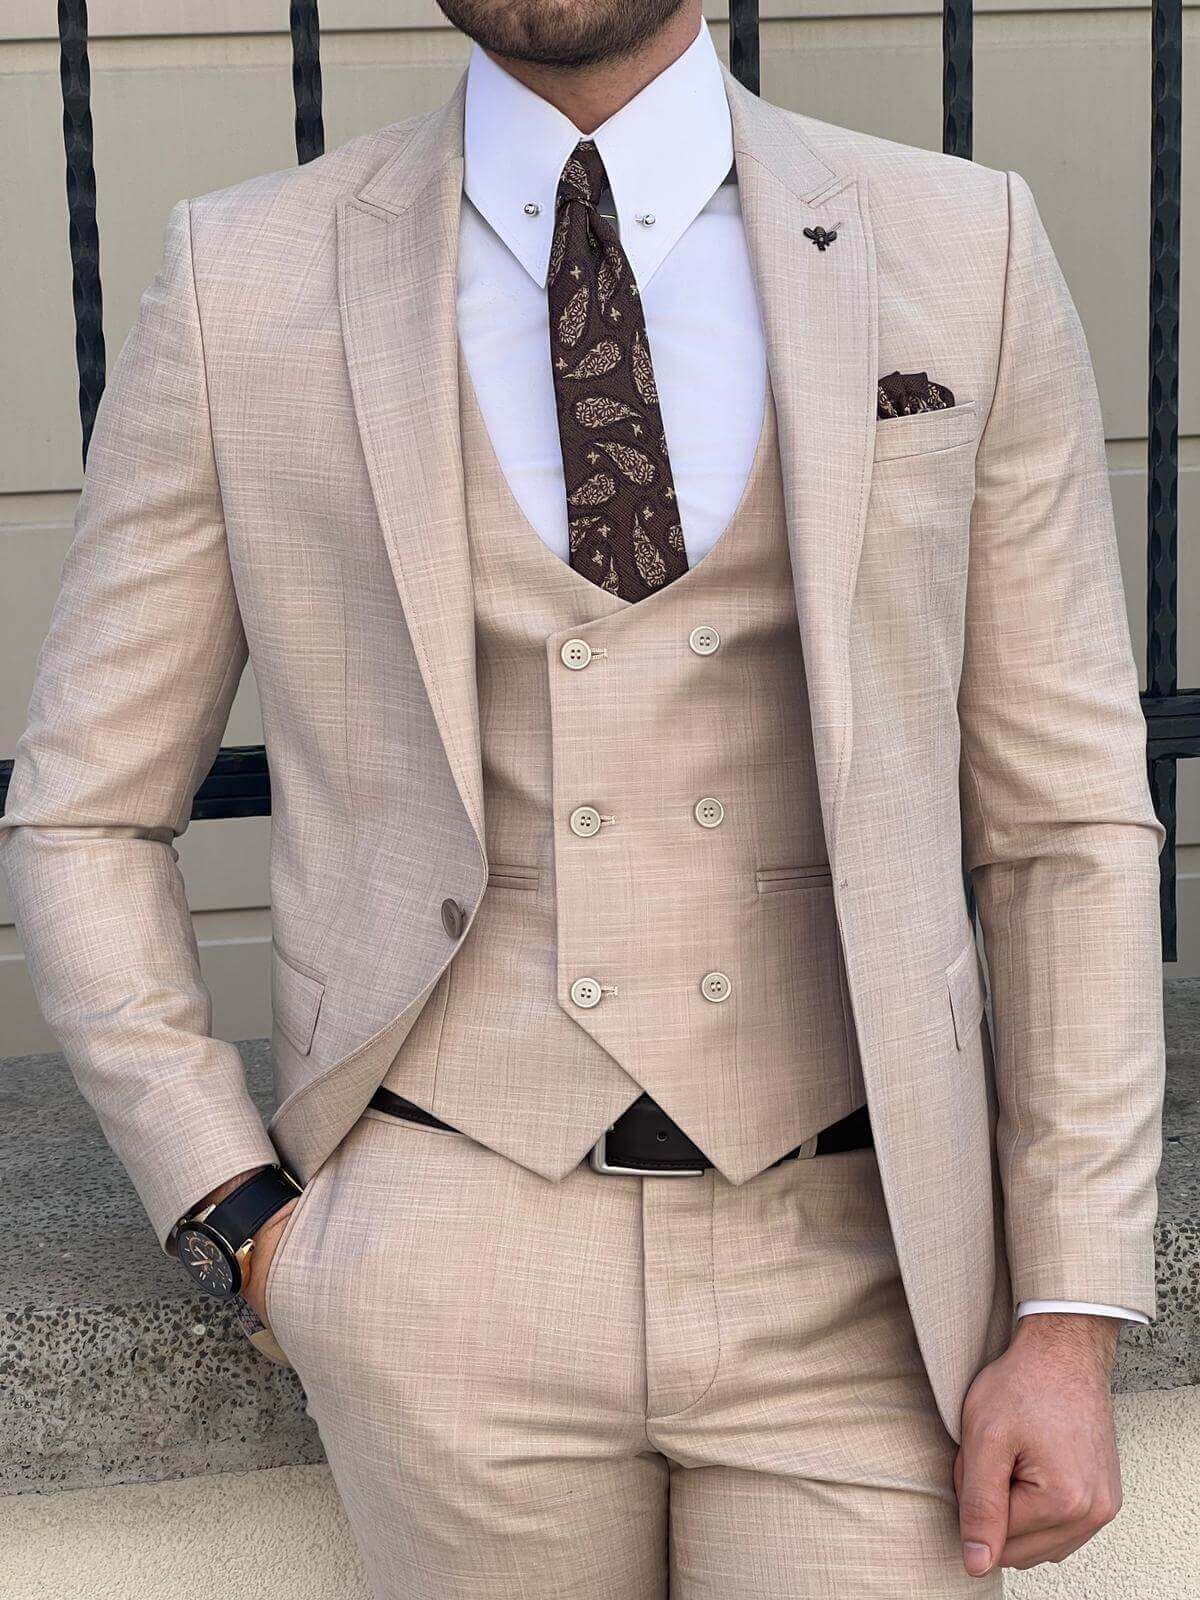 A model showcasing beige suit for men.